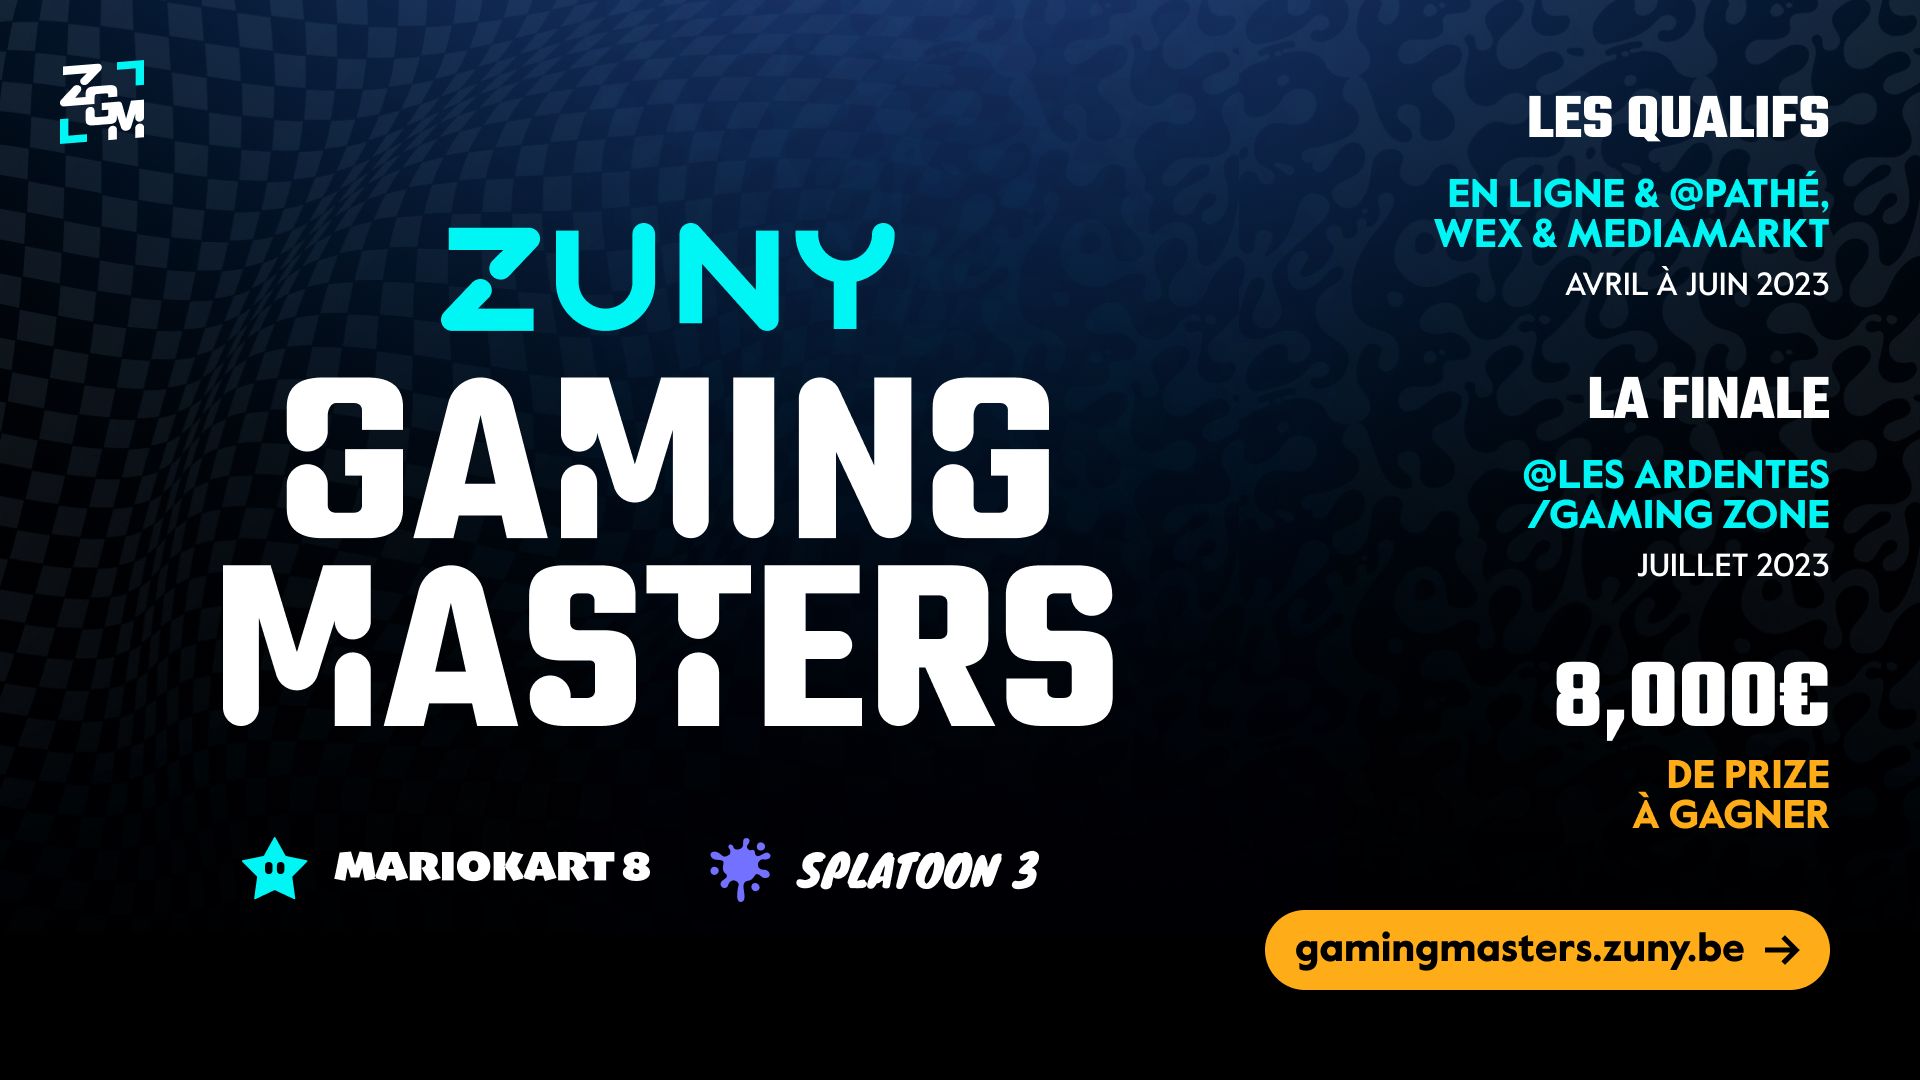 Les Zuny Gaming Masters, un tournoi Mariokart 8 Deluxe et Splatoon 3 ouvert à tous débutent en avril. Les finales auront lieu dans la Gaming Zone des Ardentes et auront une cagnotte globale de 8000€.